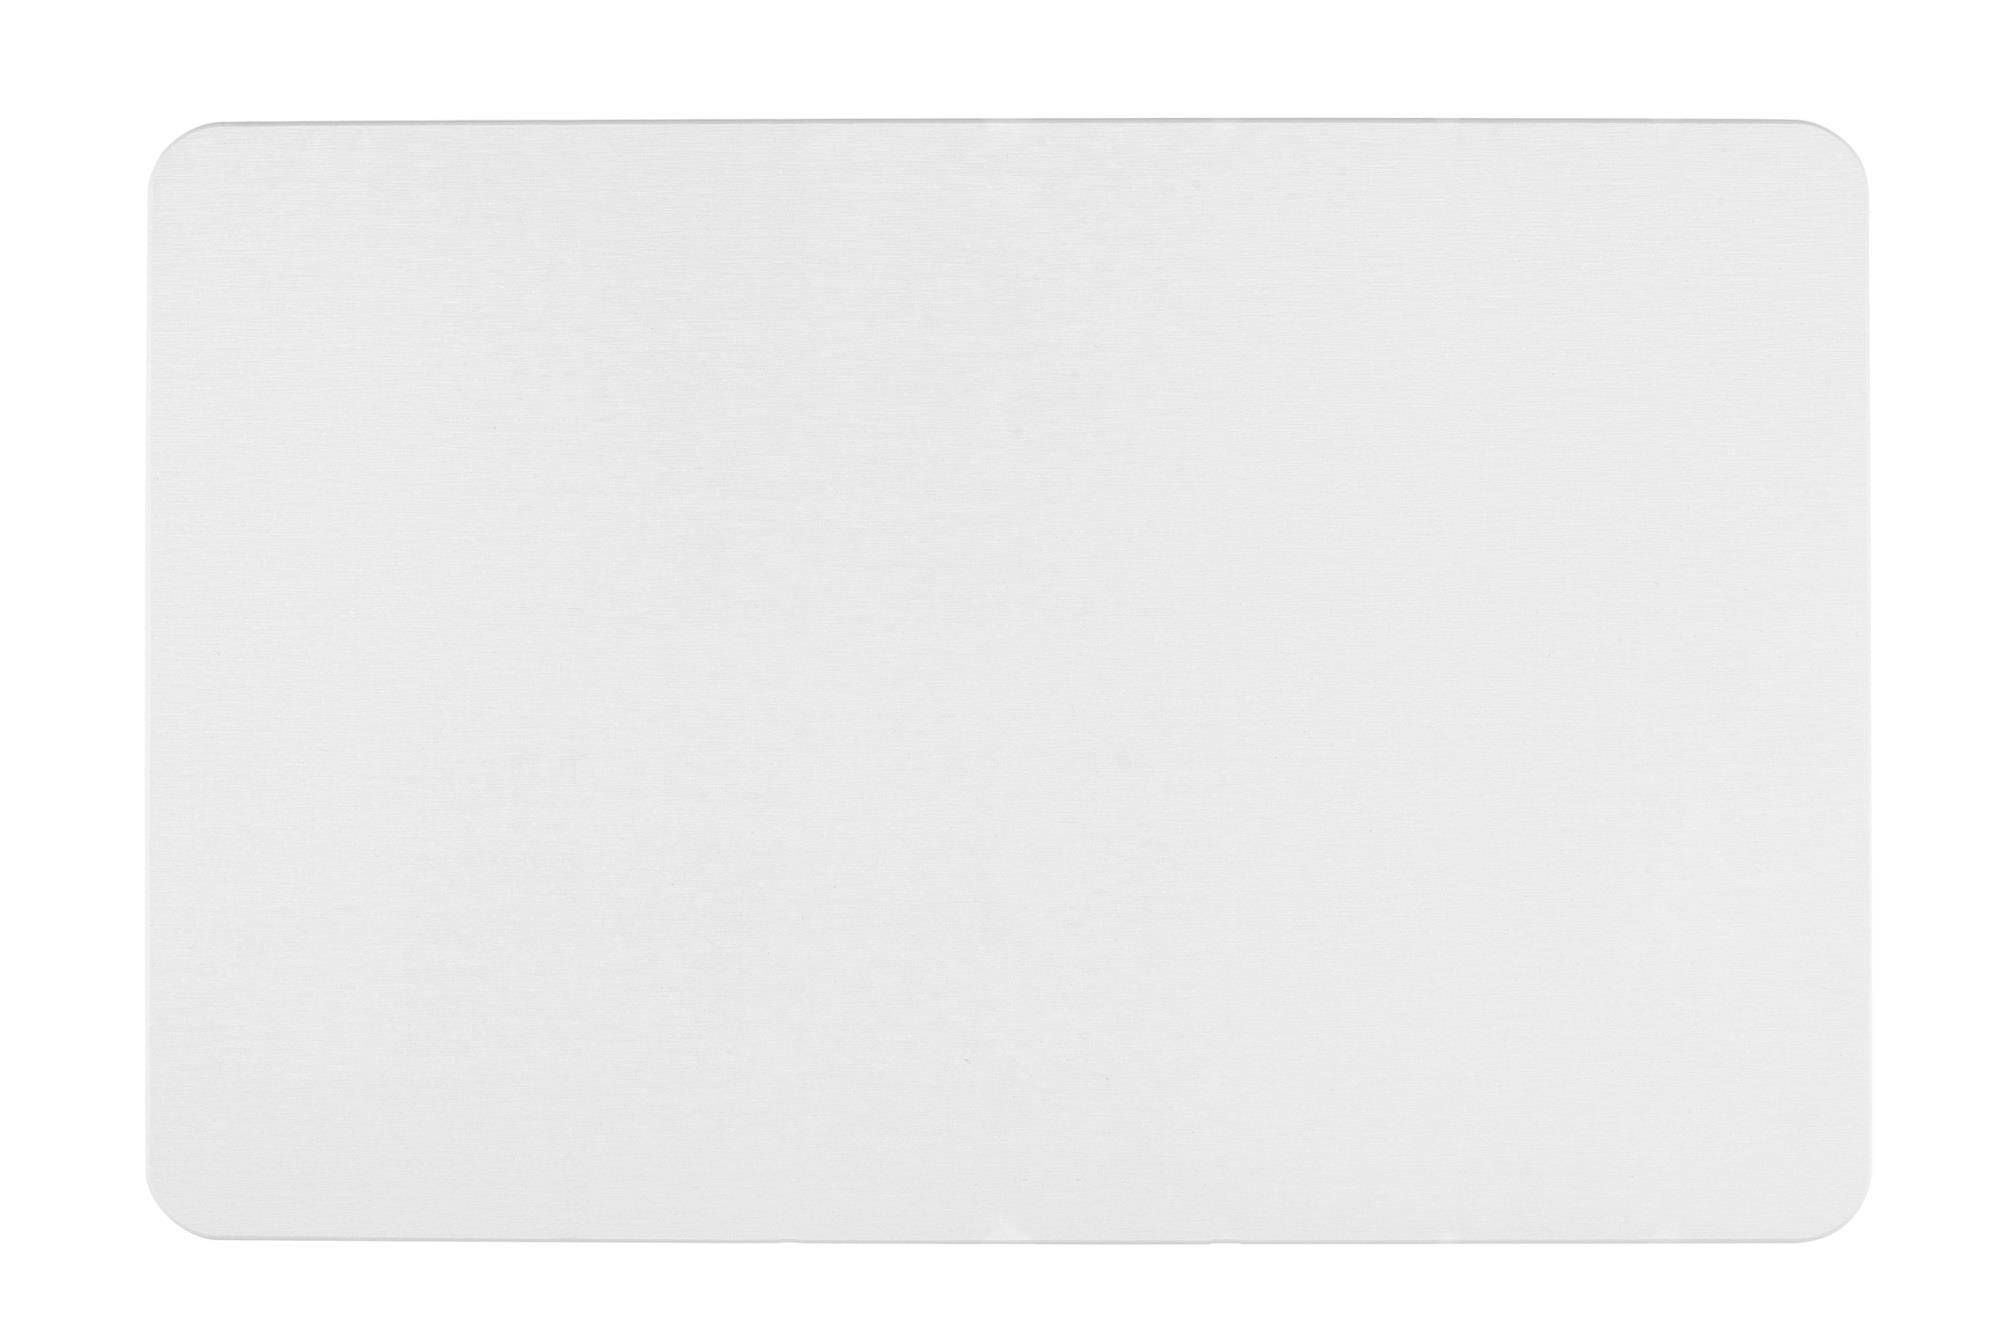 Předložka do koupelny SIMI, bílá, 60 x 39 cm, WENKO - EMAKO.CZ s.r.o.